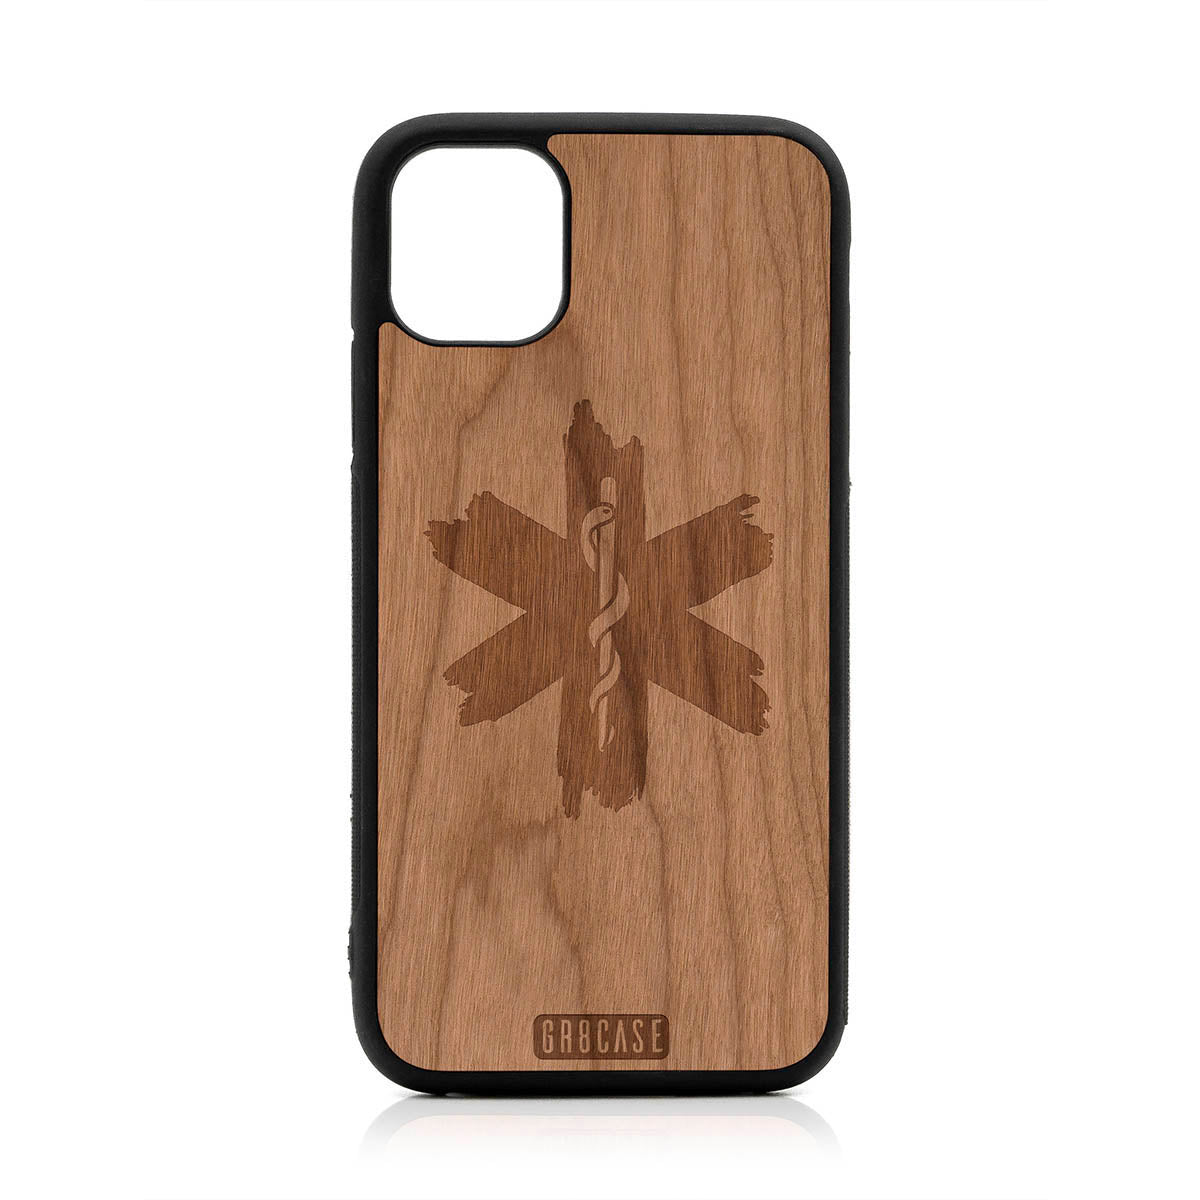 EMT Design Wood Case For iPhone 11 Pro Max by GR8CASE